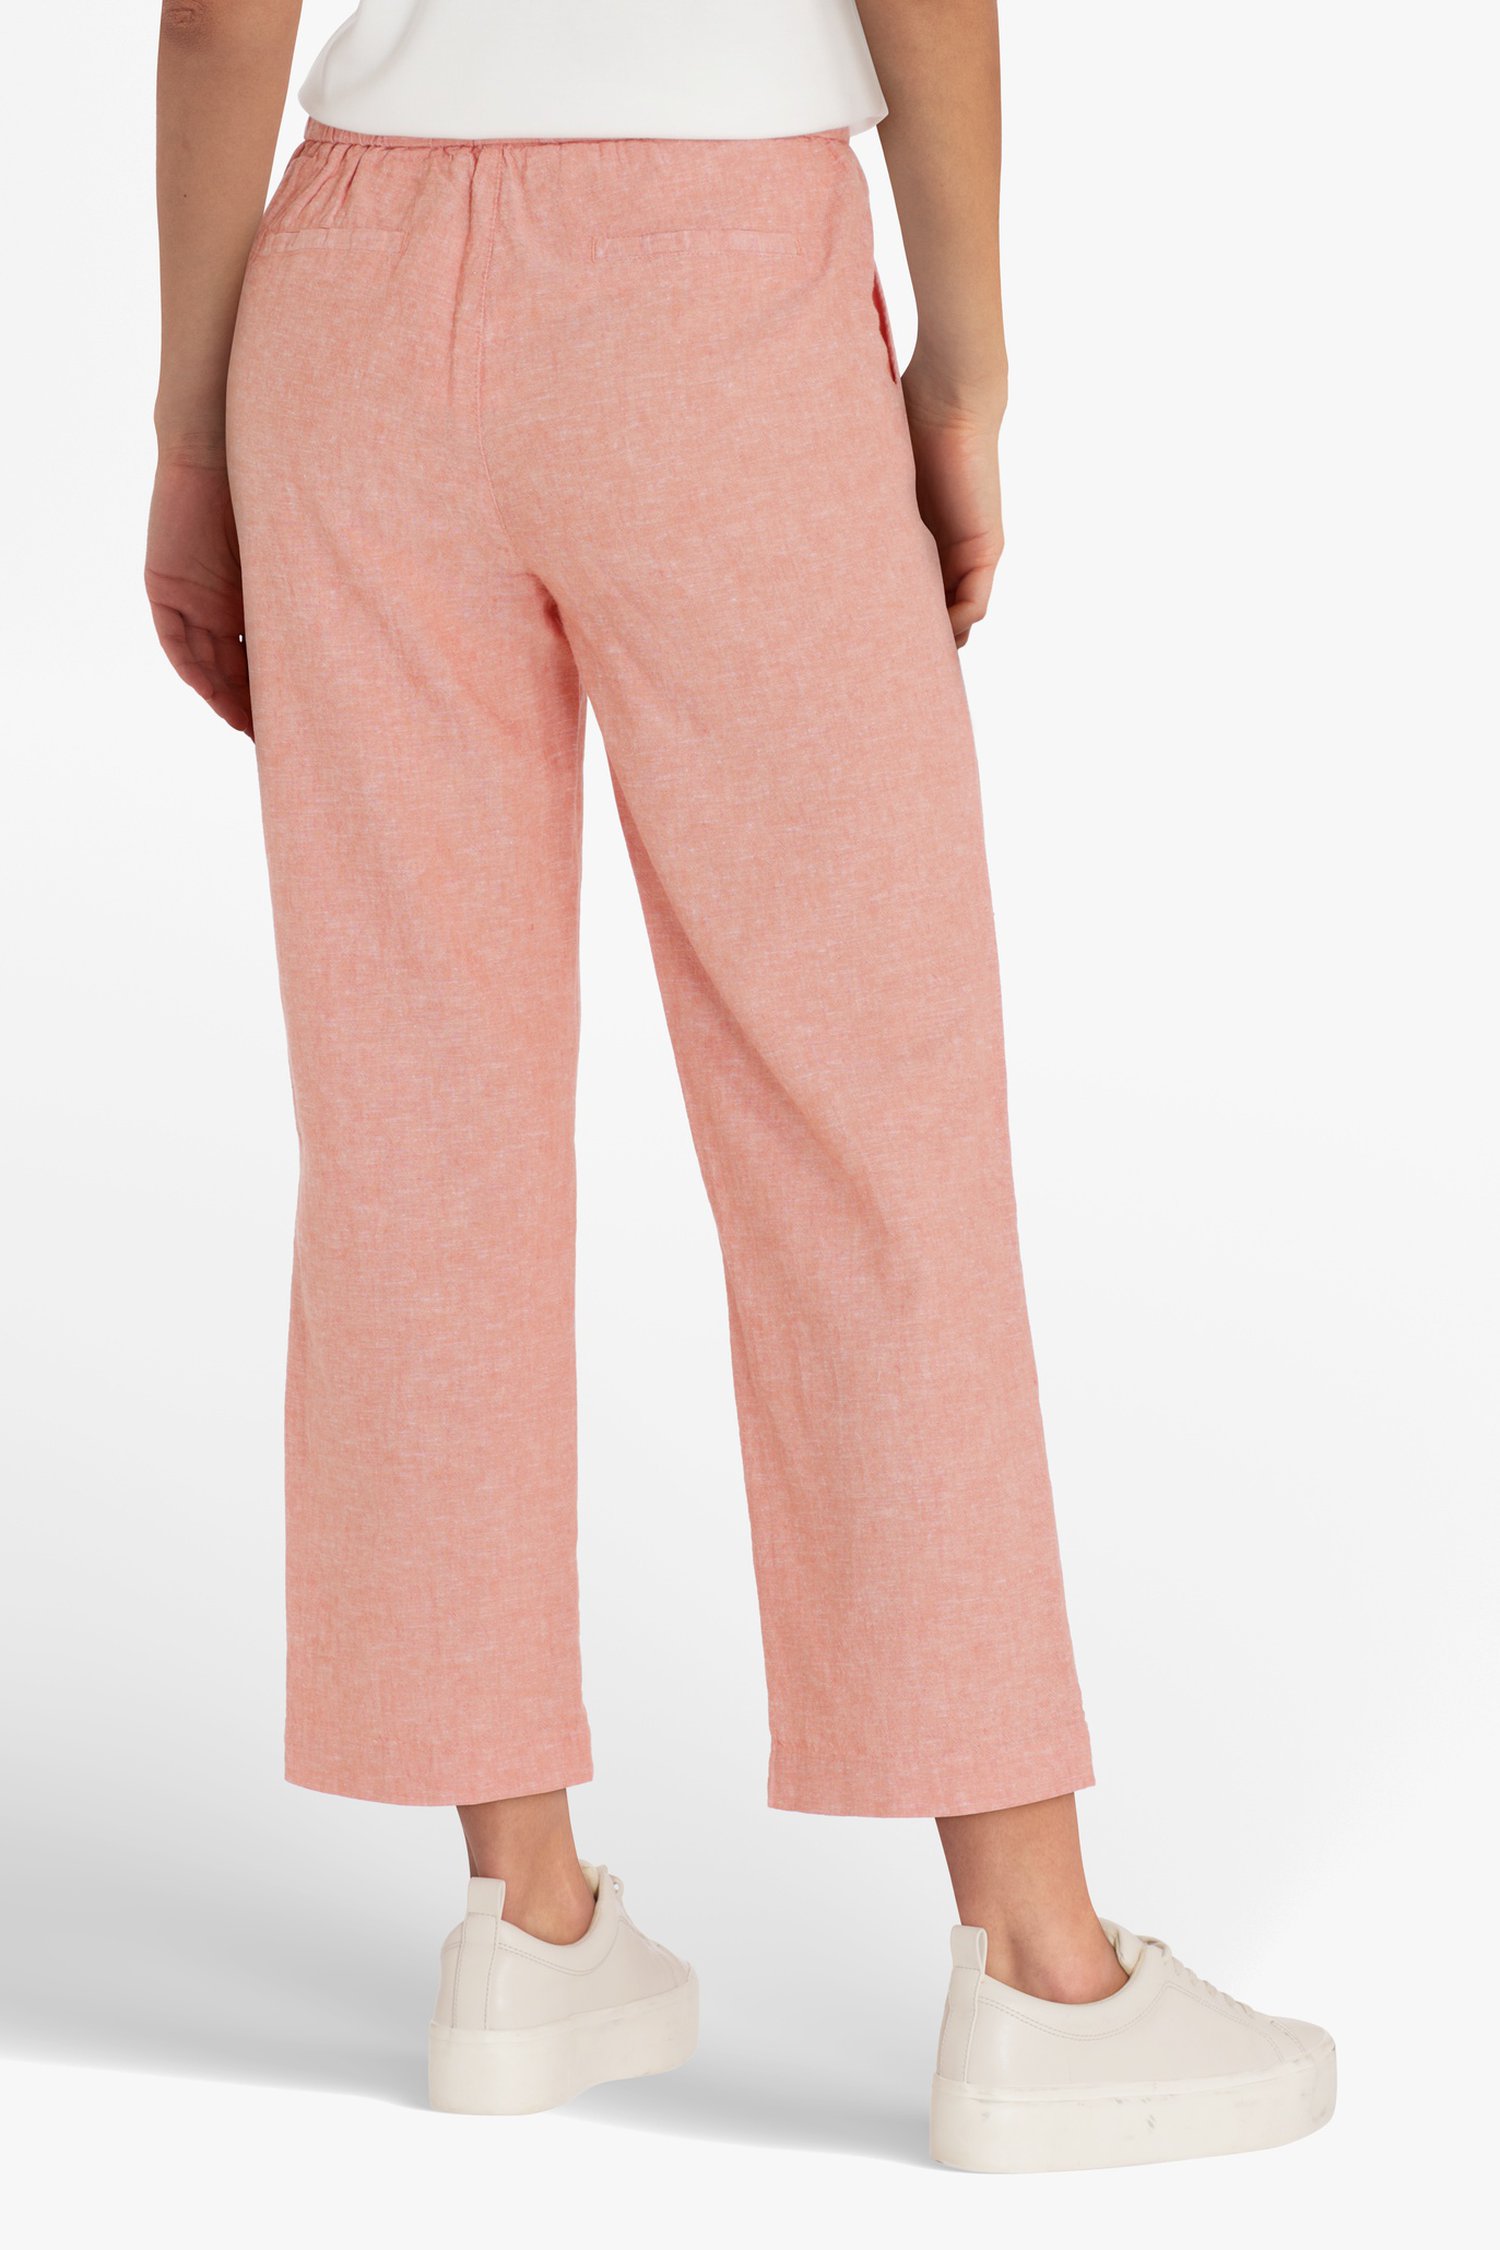 Oranjeroze broek in katoen en linnen -straight fit van Liberty Island voor Dames